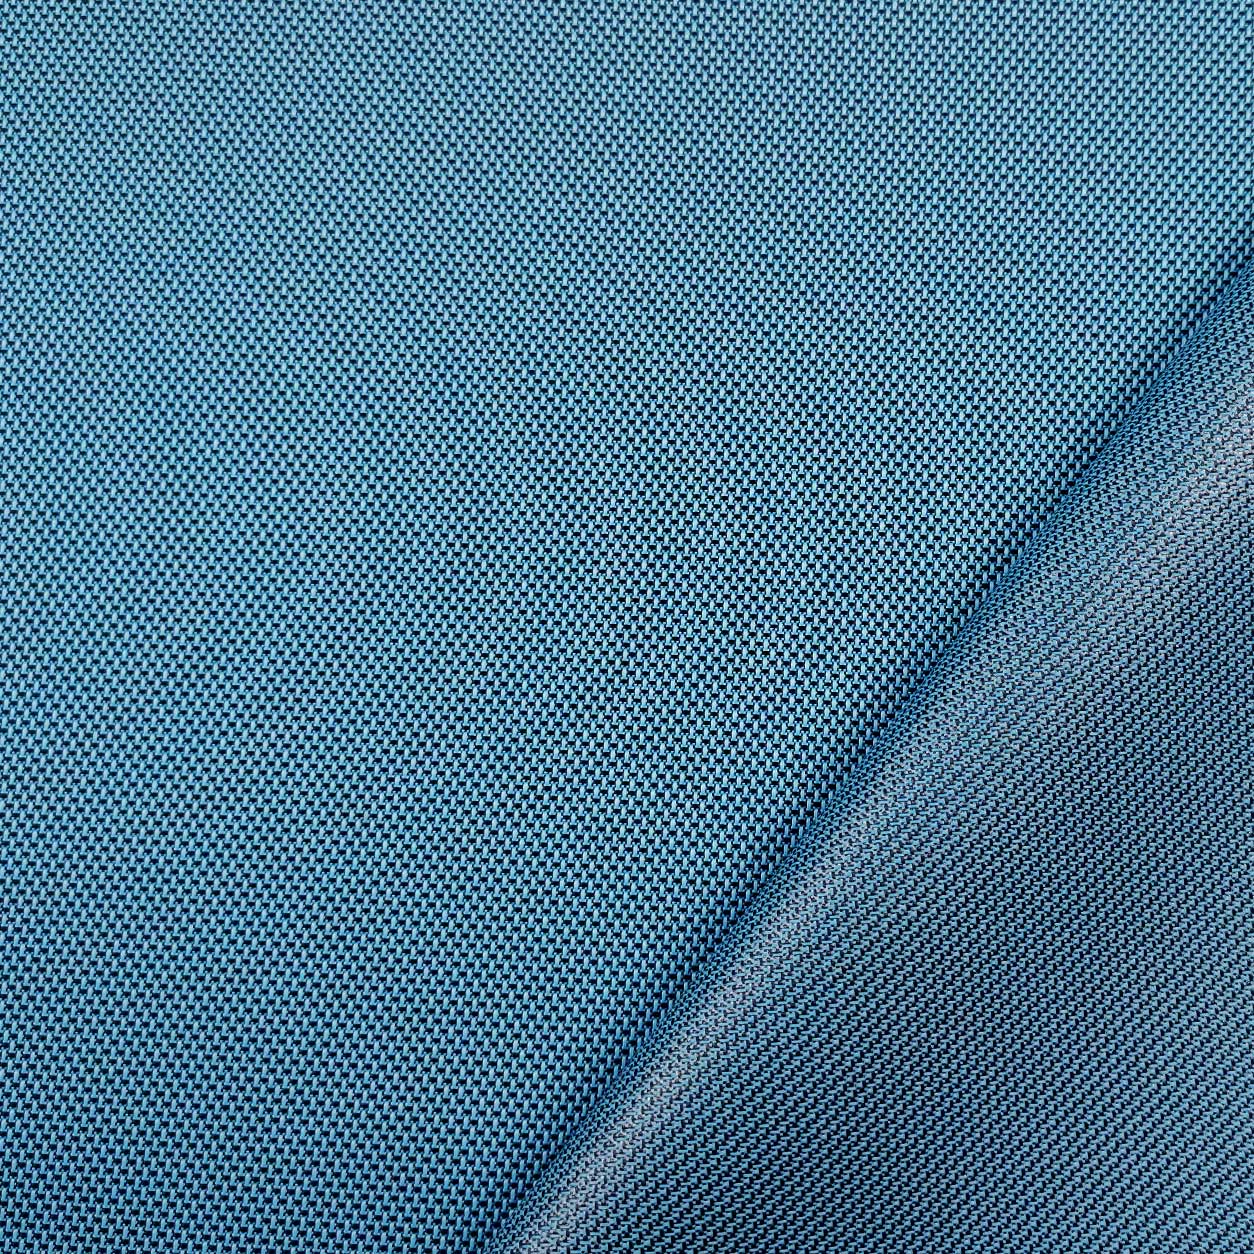 materiale impermeabile per borse pesante micro fantasia azzurro